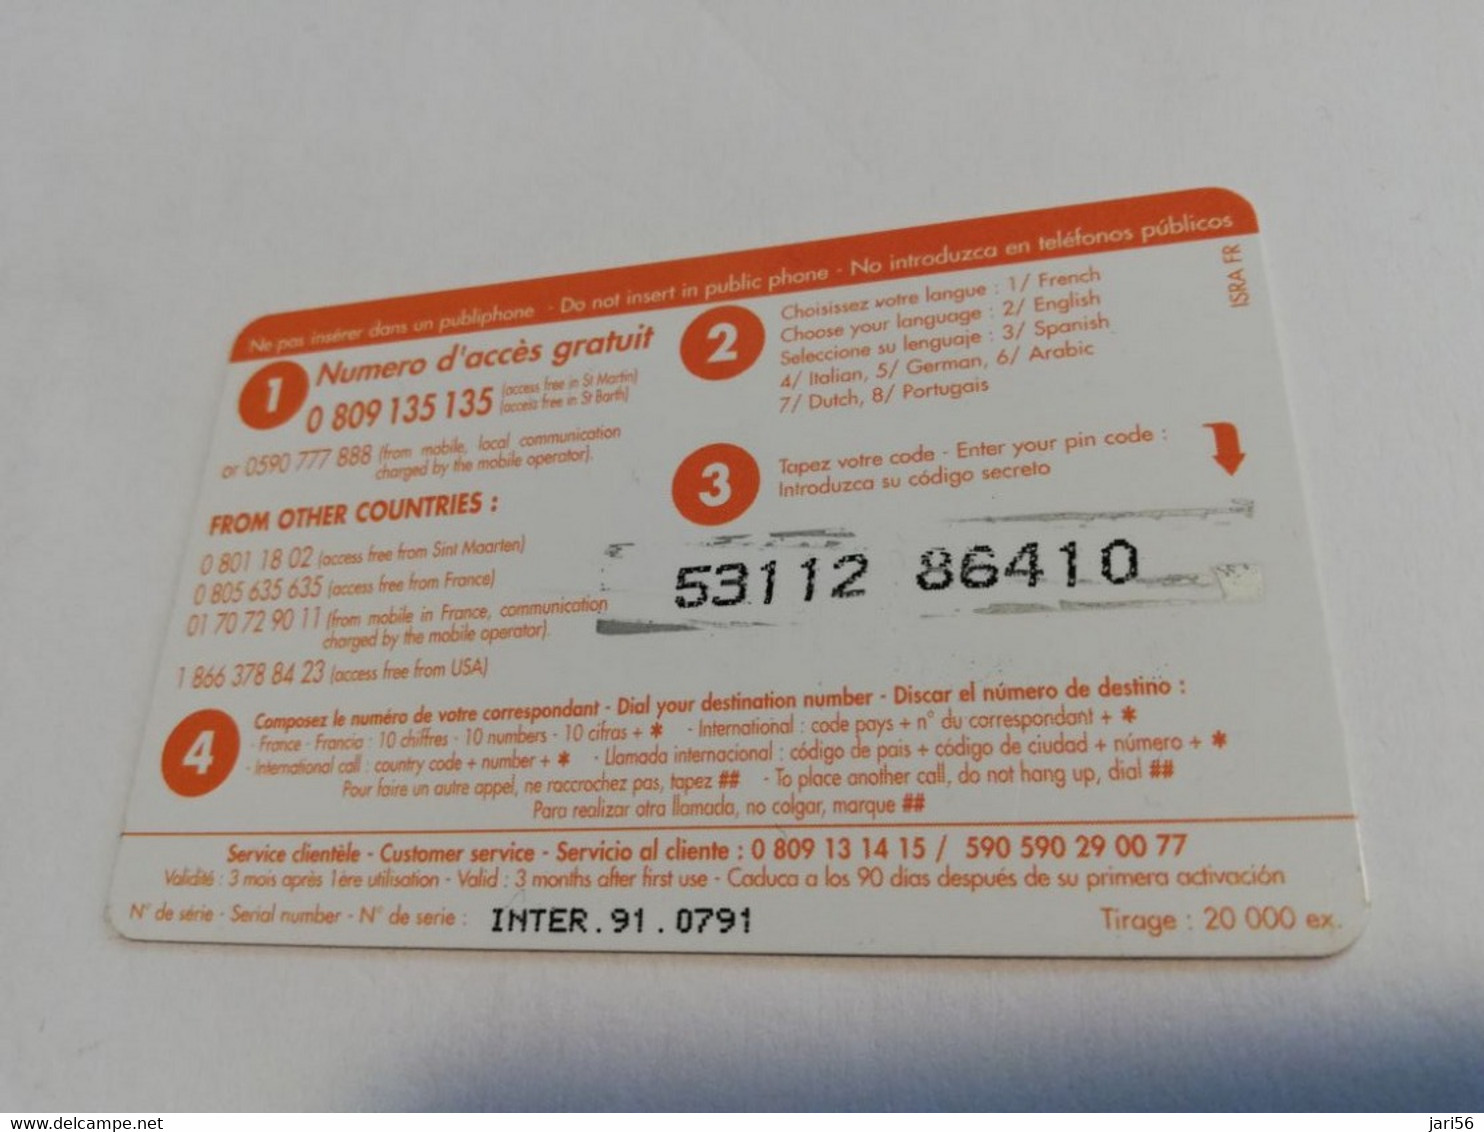 ST MARTIN / INTERCARD  3 EURO  OCTROI DE COLE BAY           NO 091   Fine Used Card    ** 6577 ** - Antillas (Francesas)